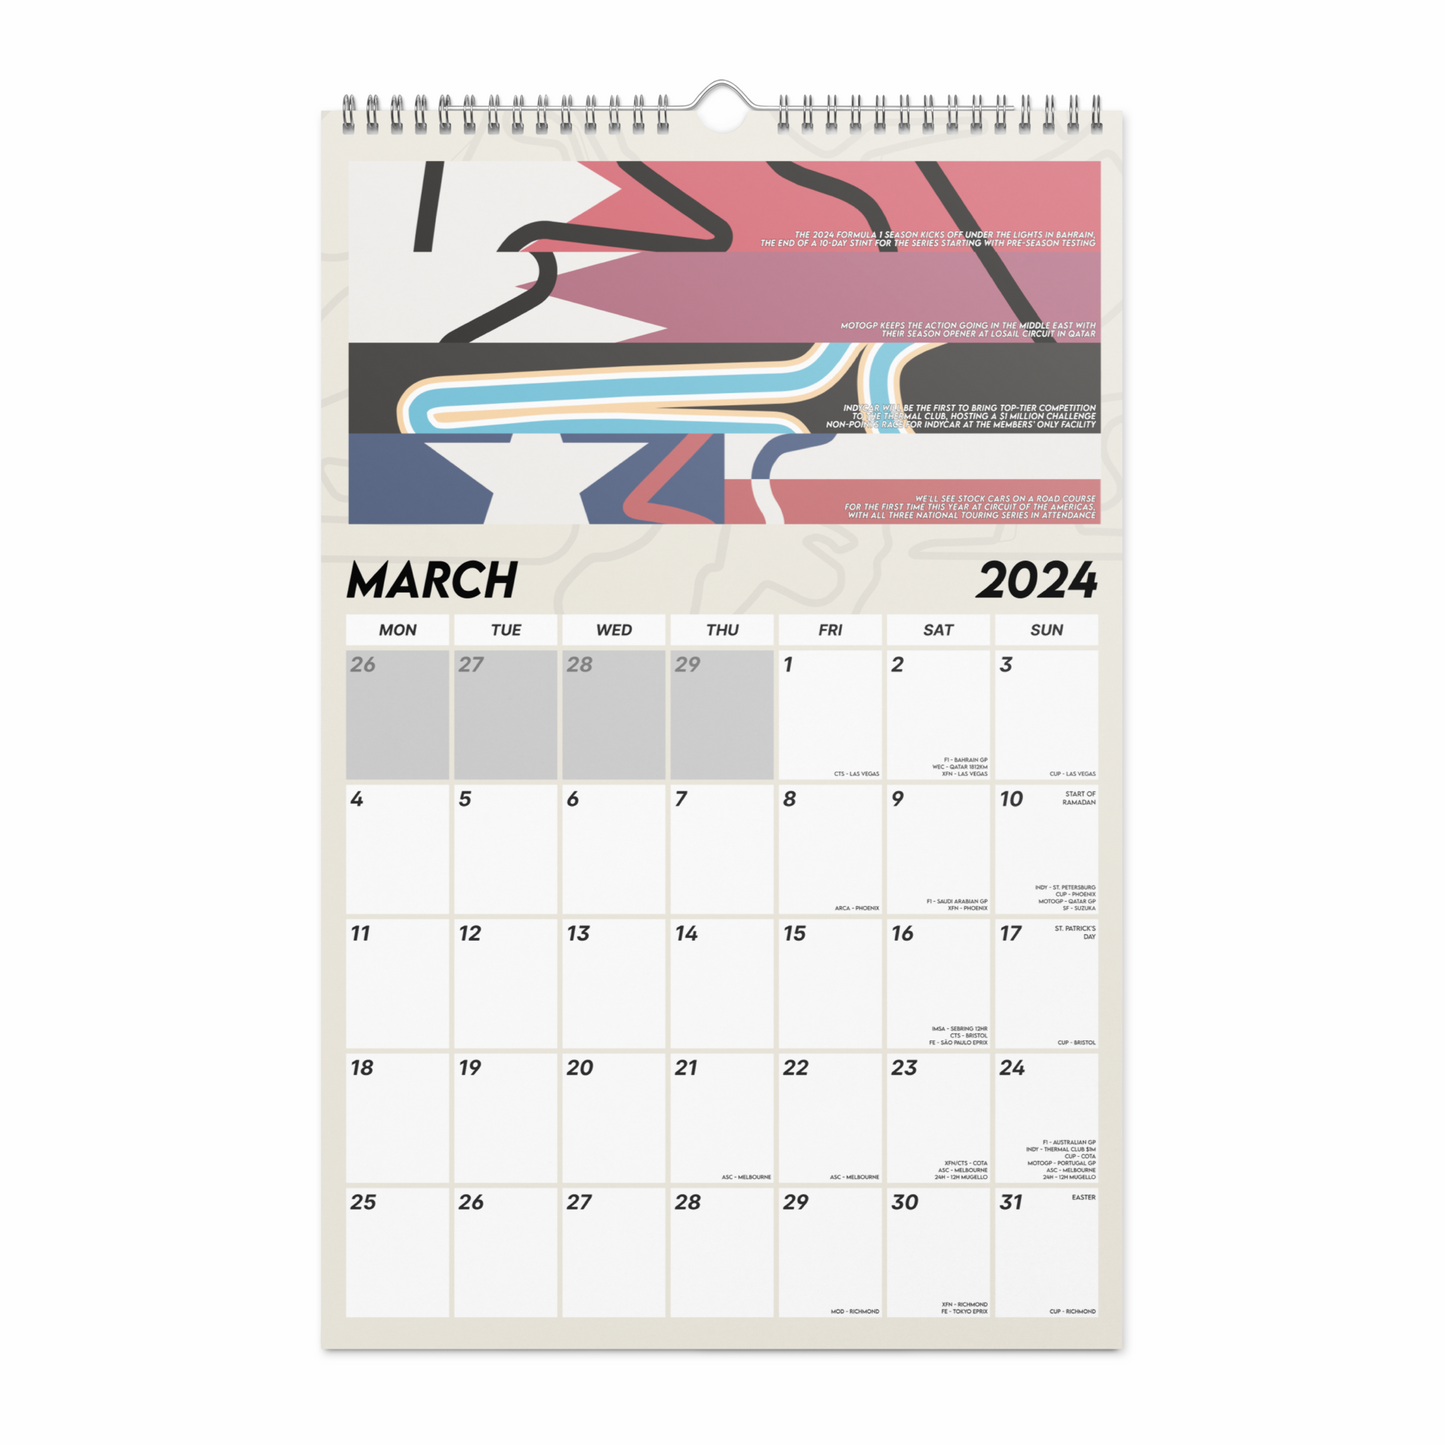 A Year on Track: 2024 Race Calendar